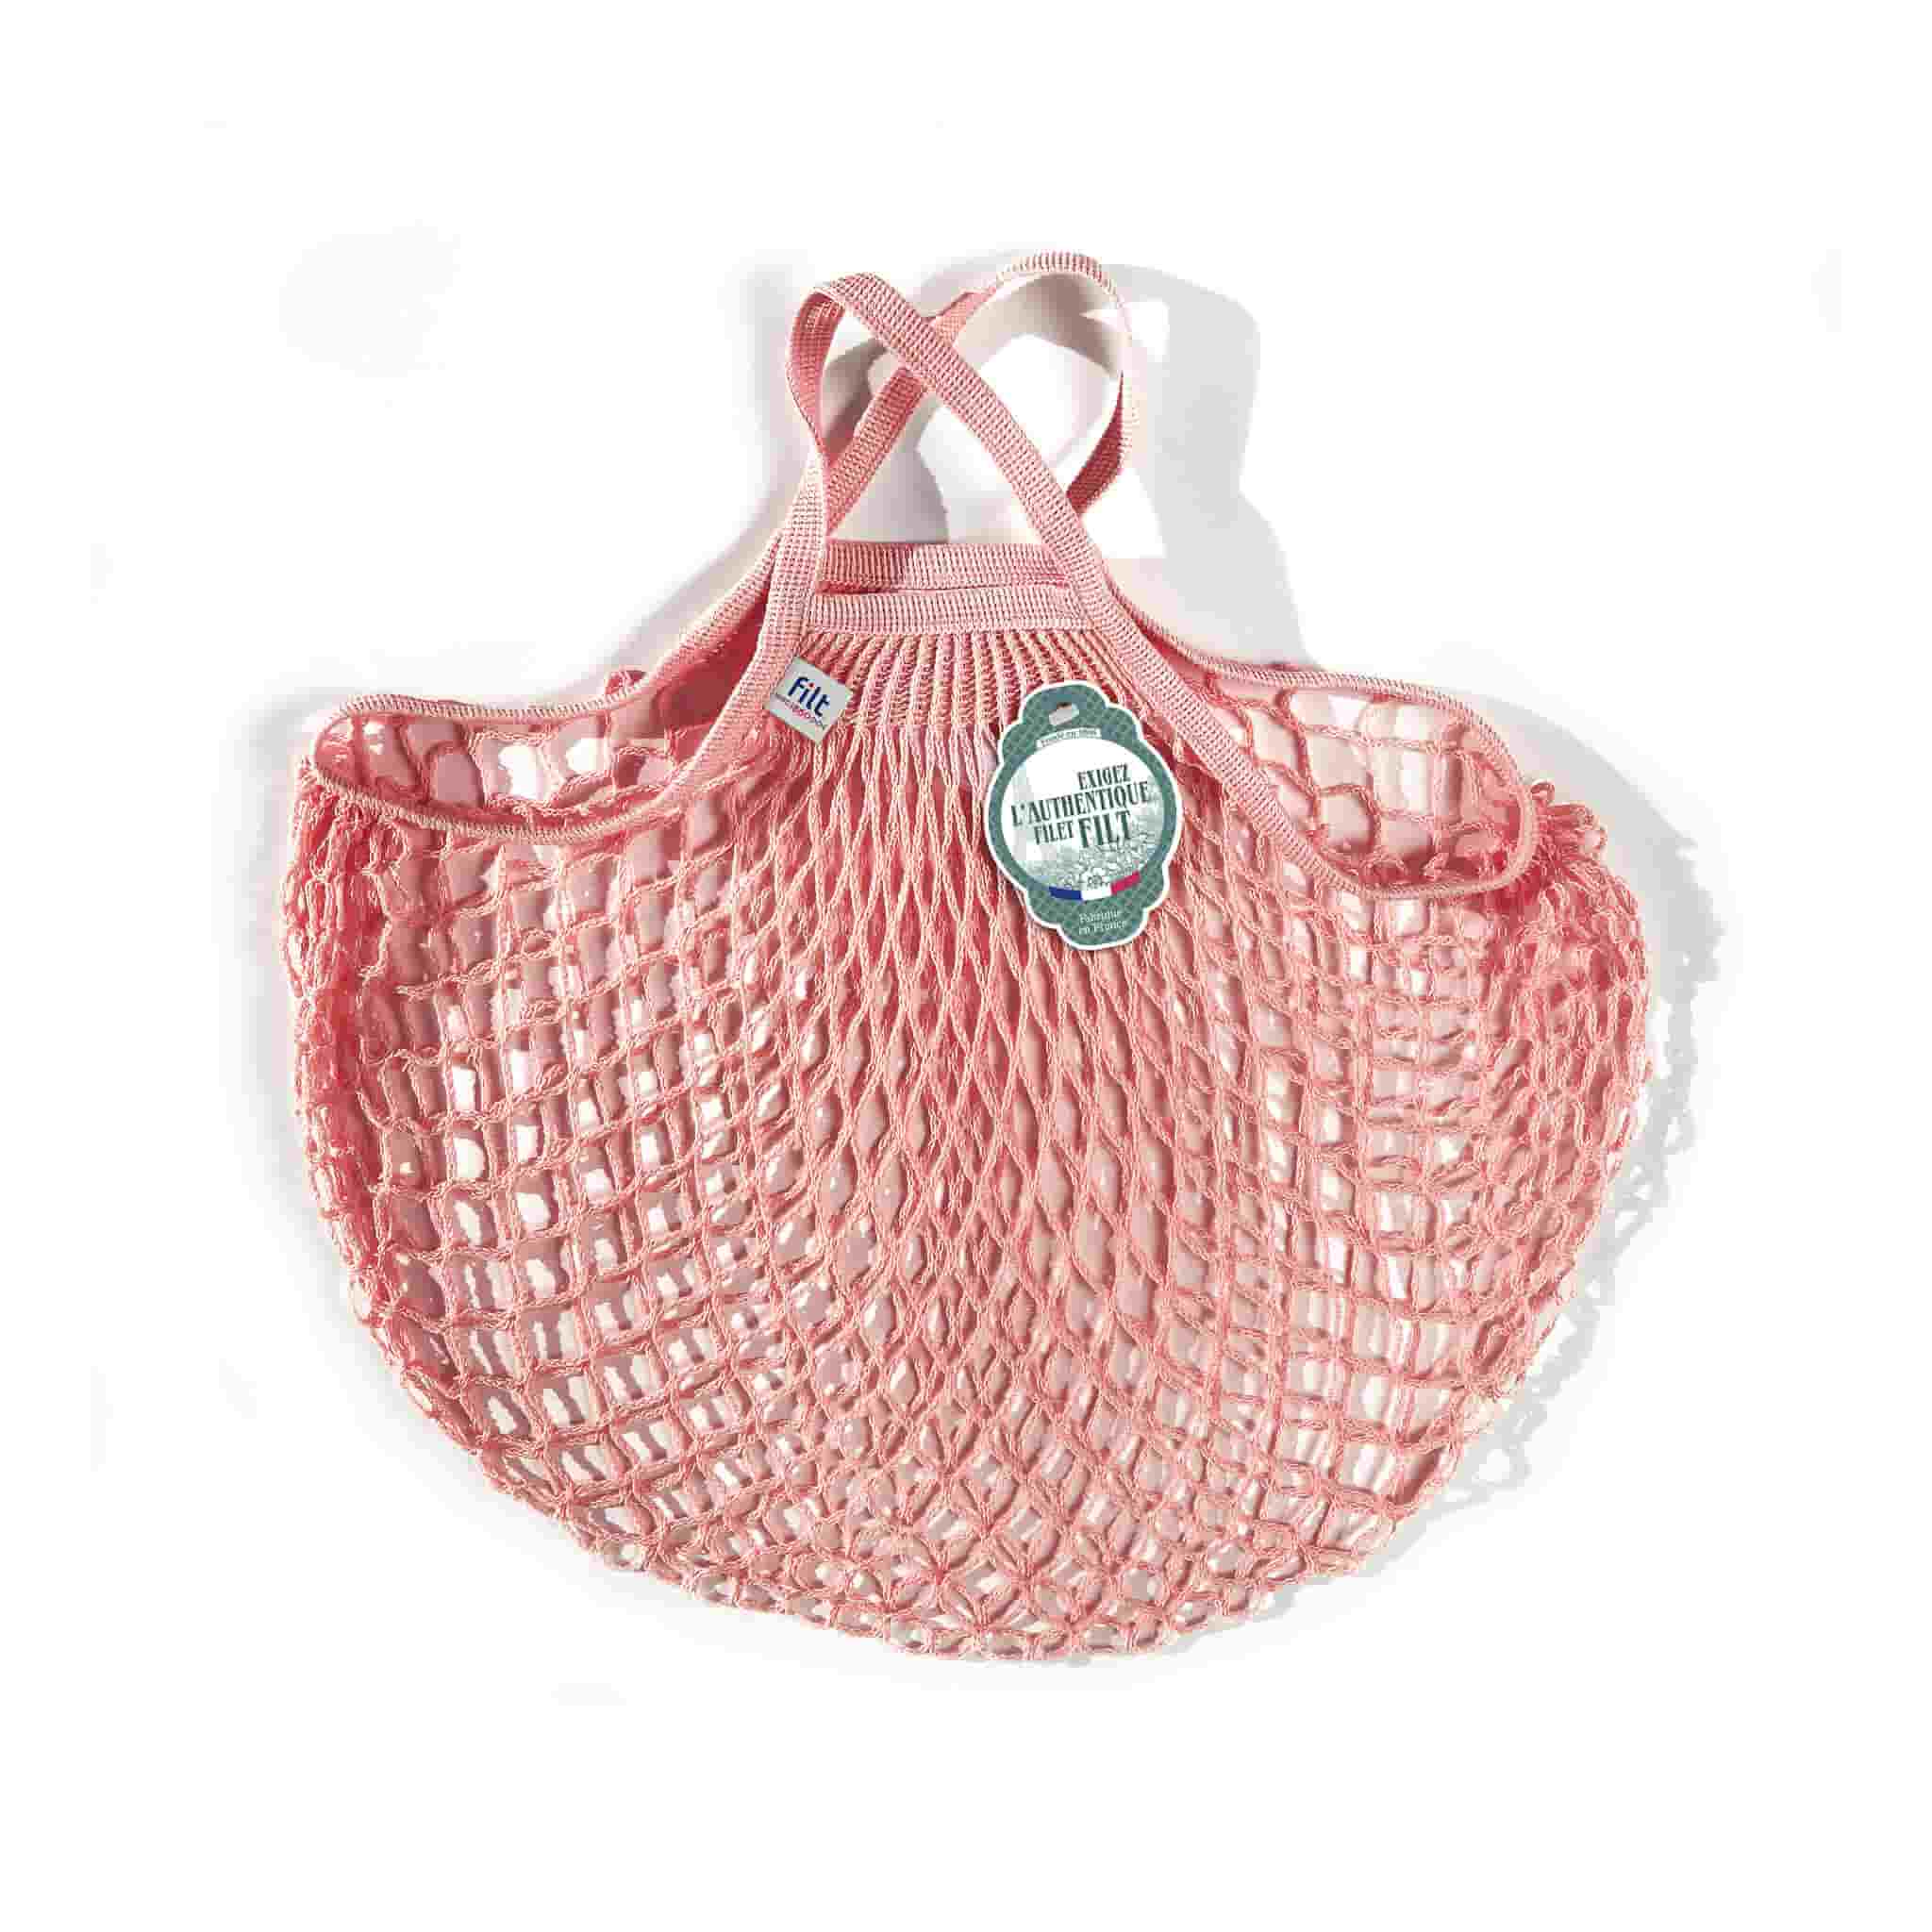 Filt String Bag in Light Pink, Short Handle